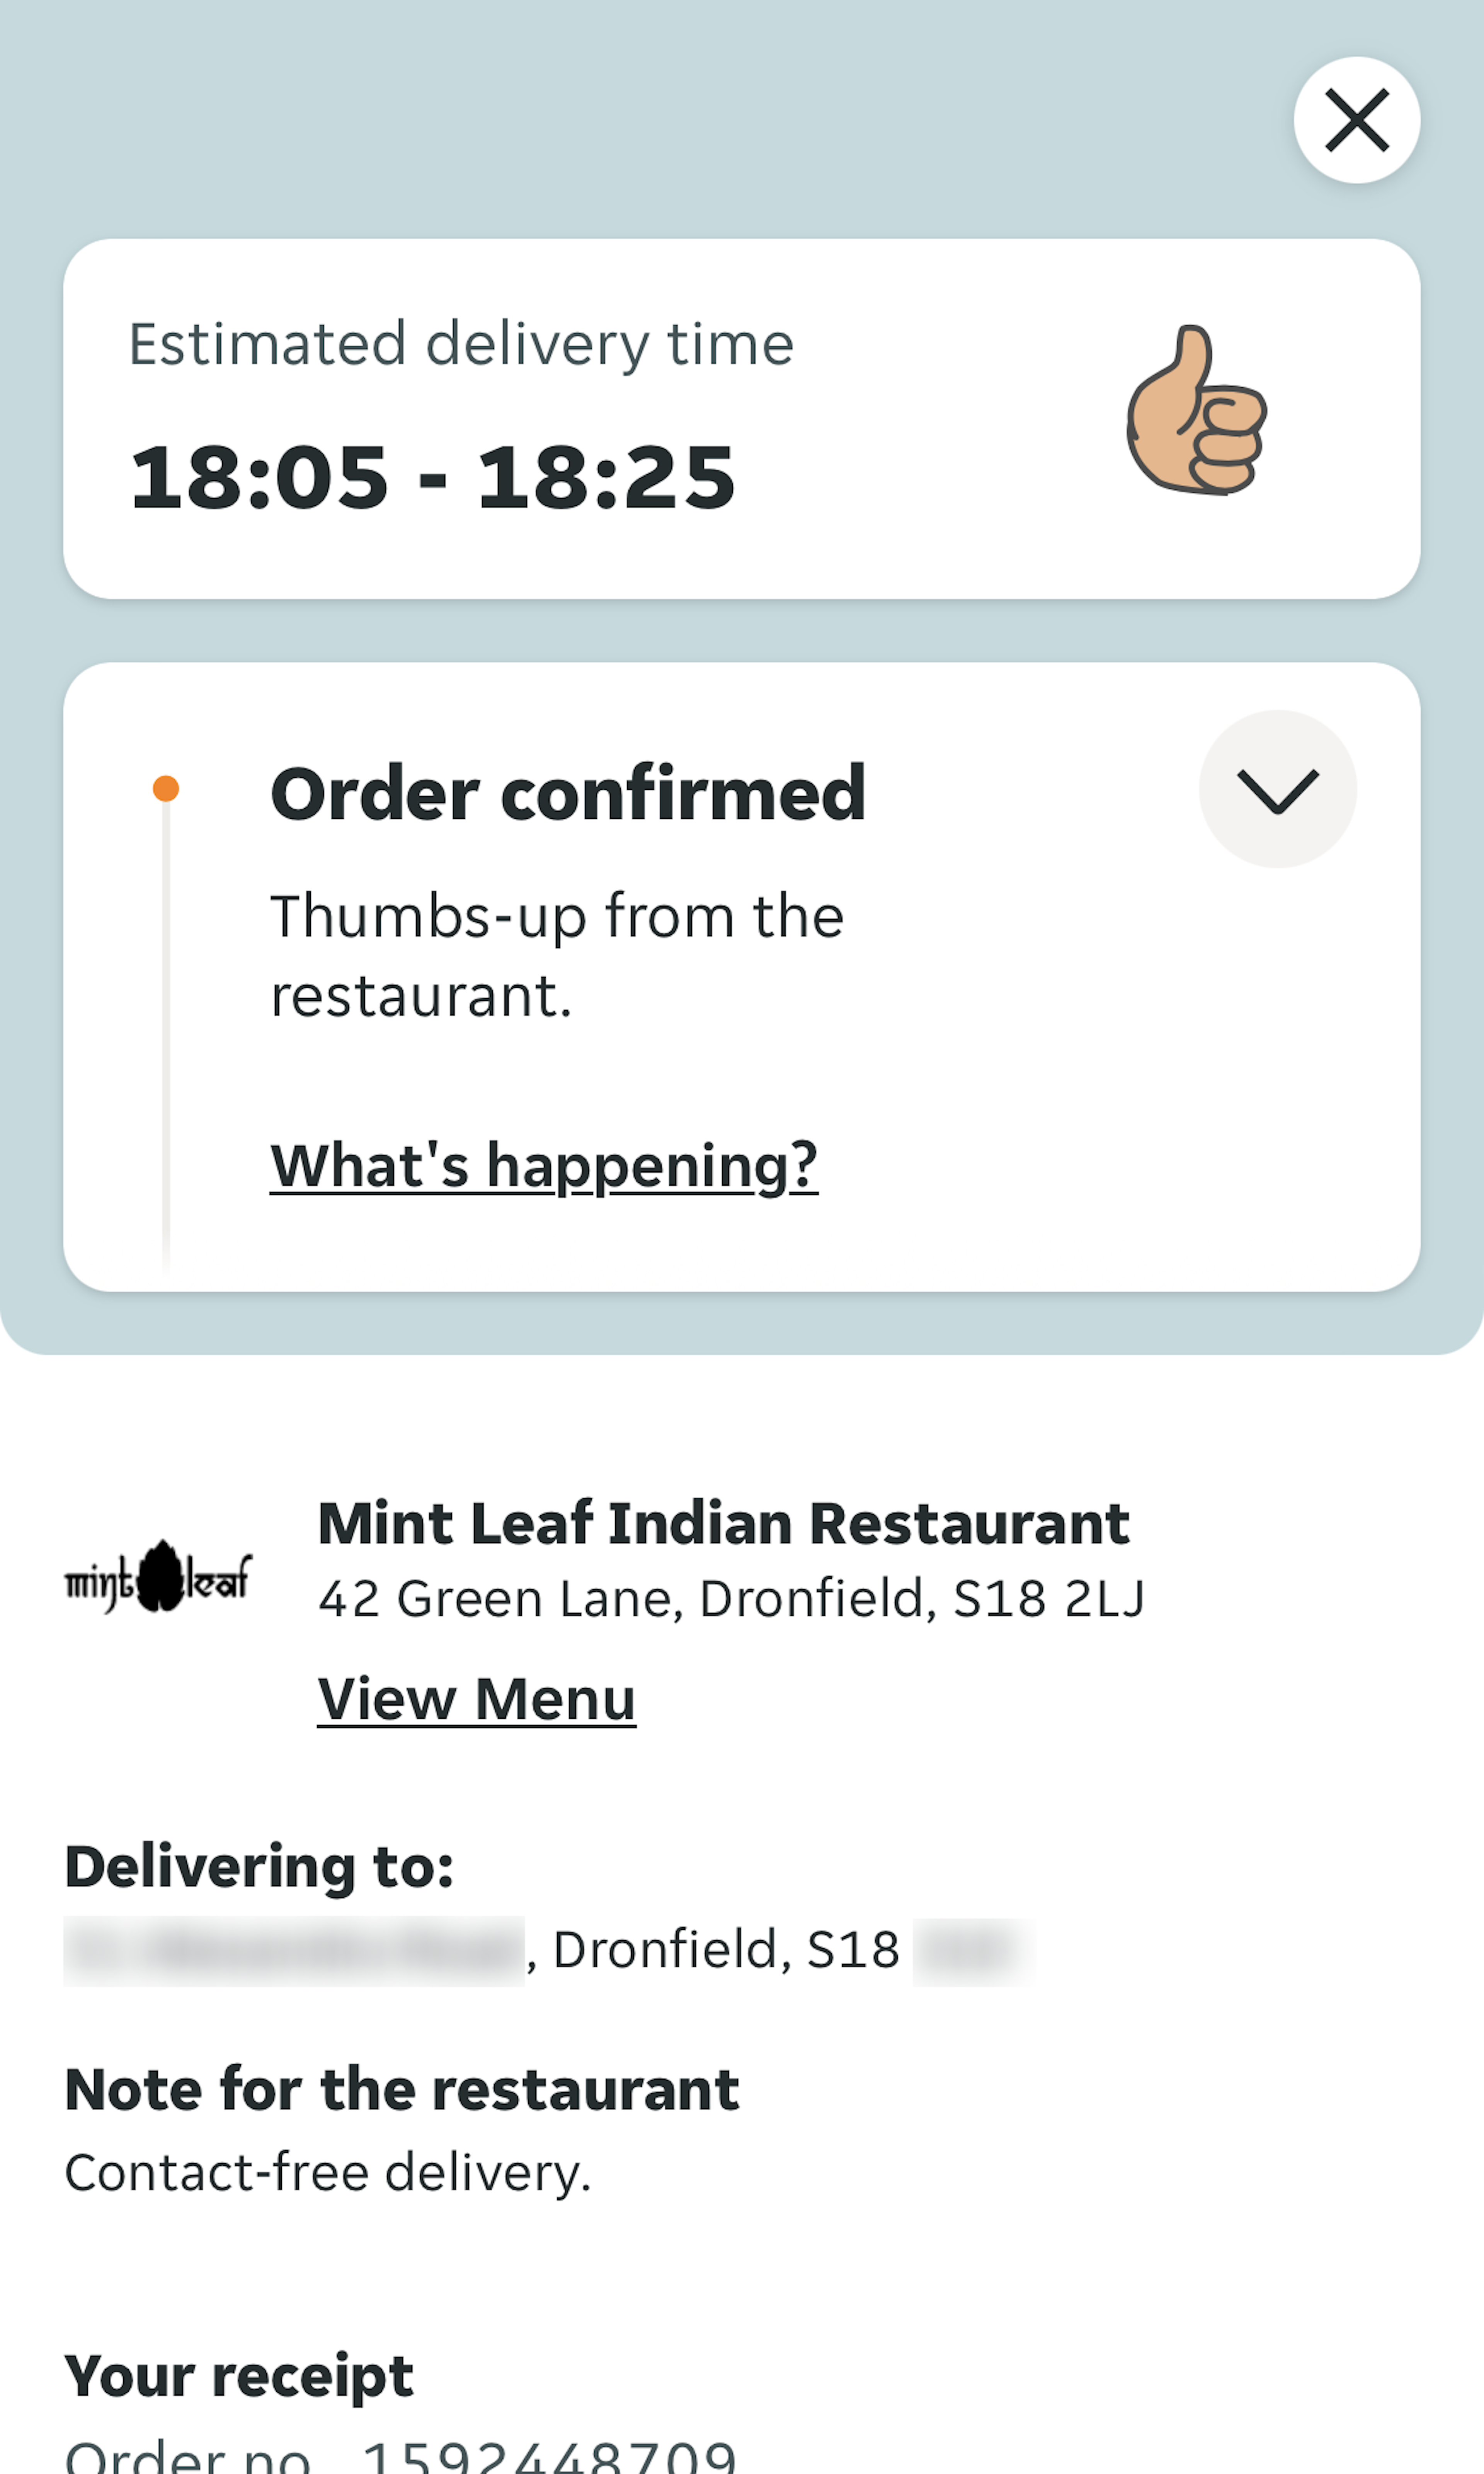 Mobile screenshot of Just Eat